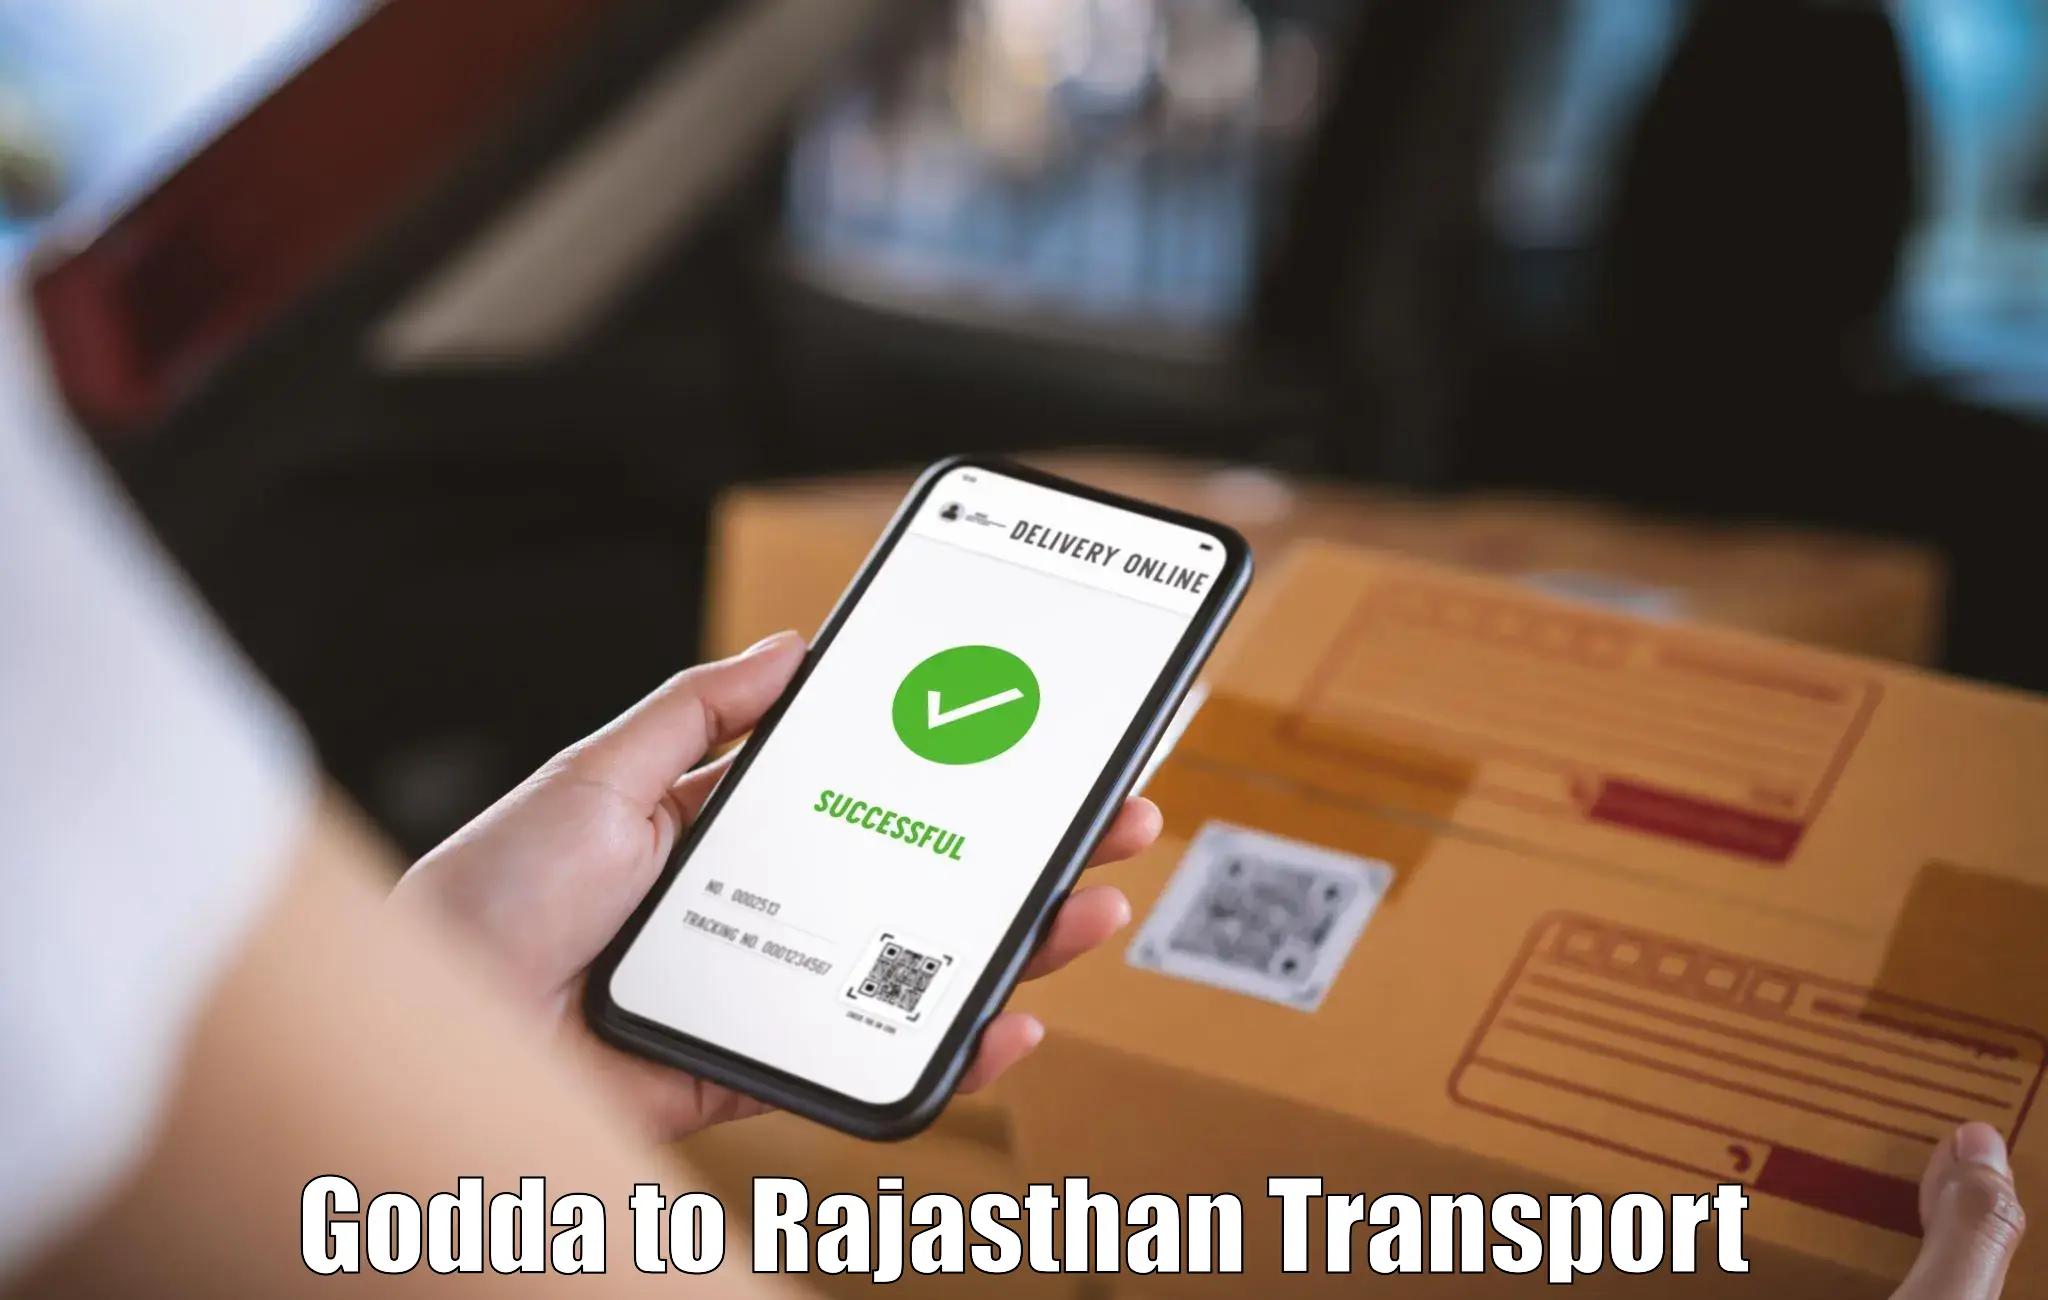 Shipping partner Godda to Chittorgarh